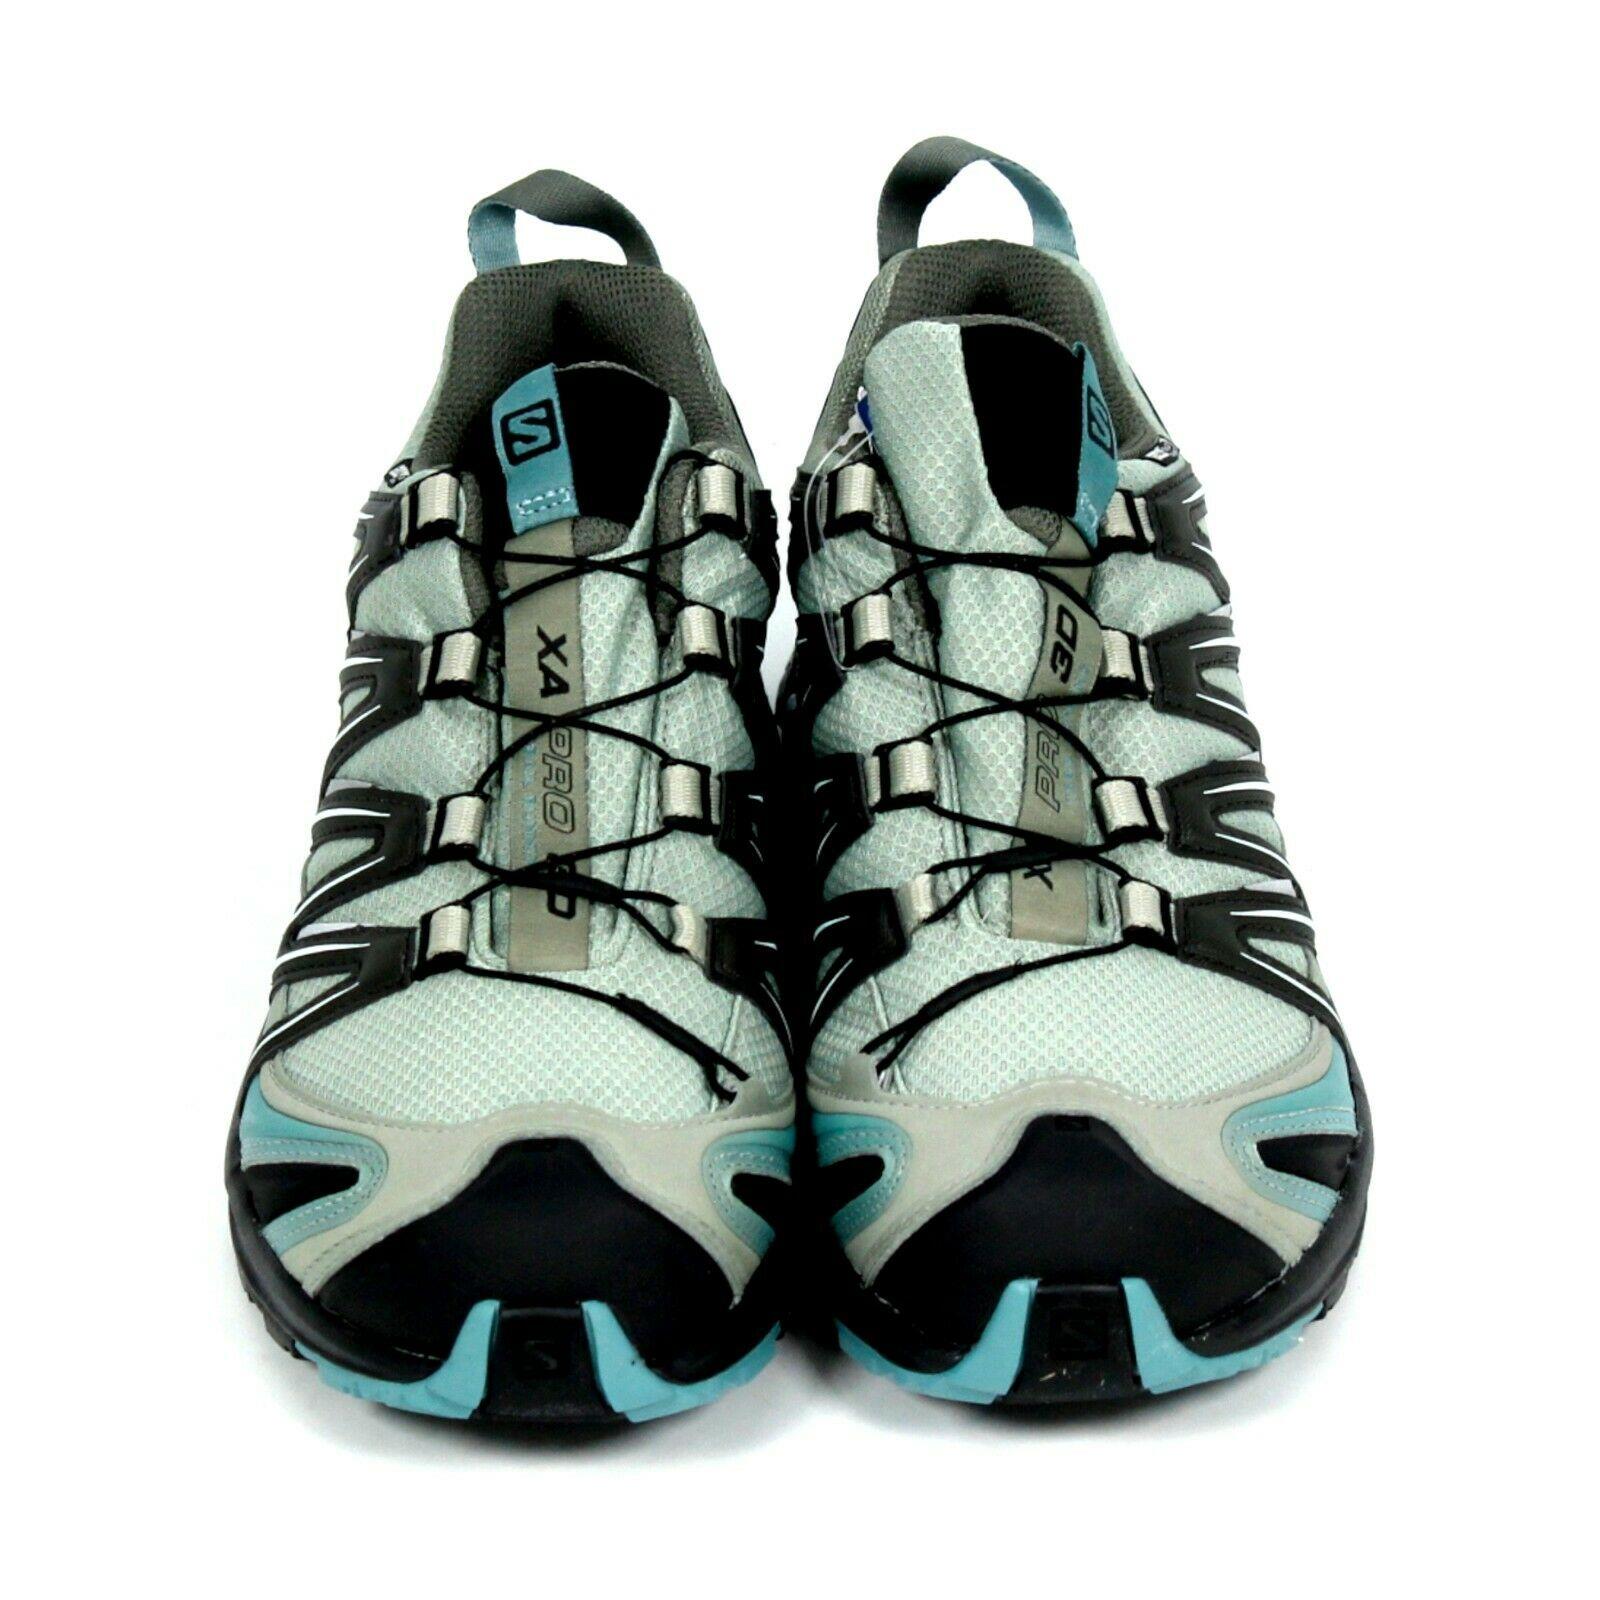 Salomon shoes Pro Trail - Multicolor 1